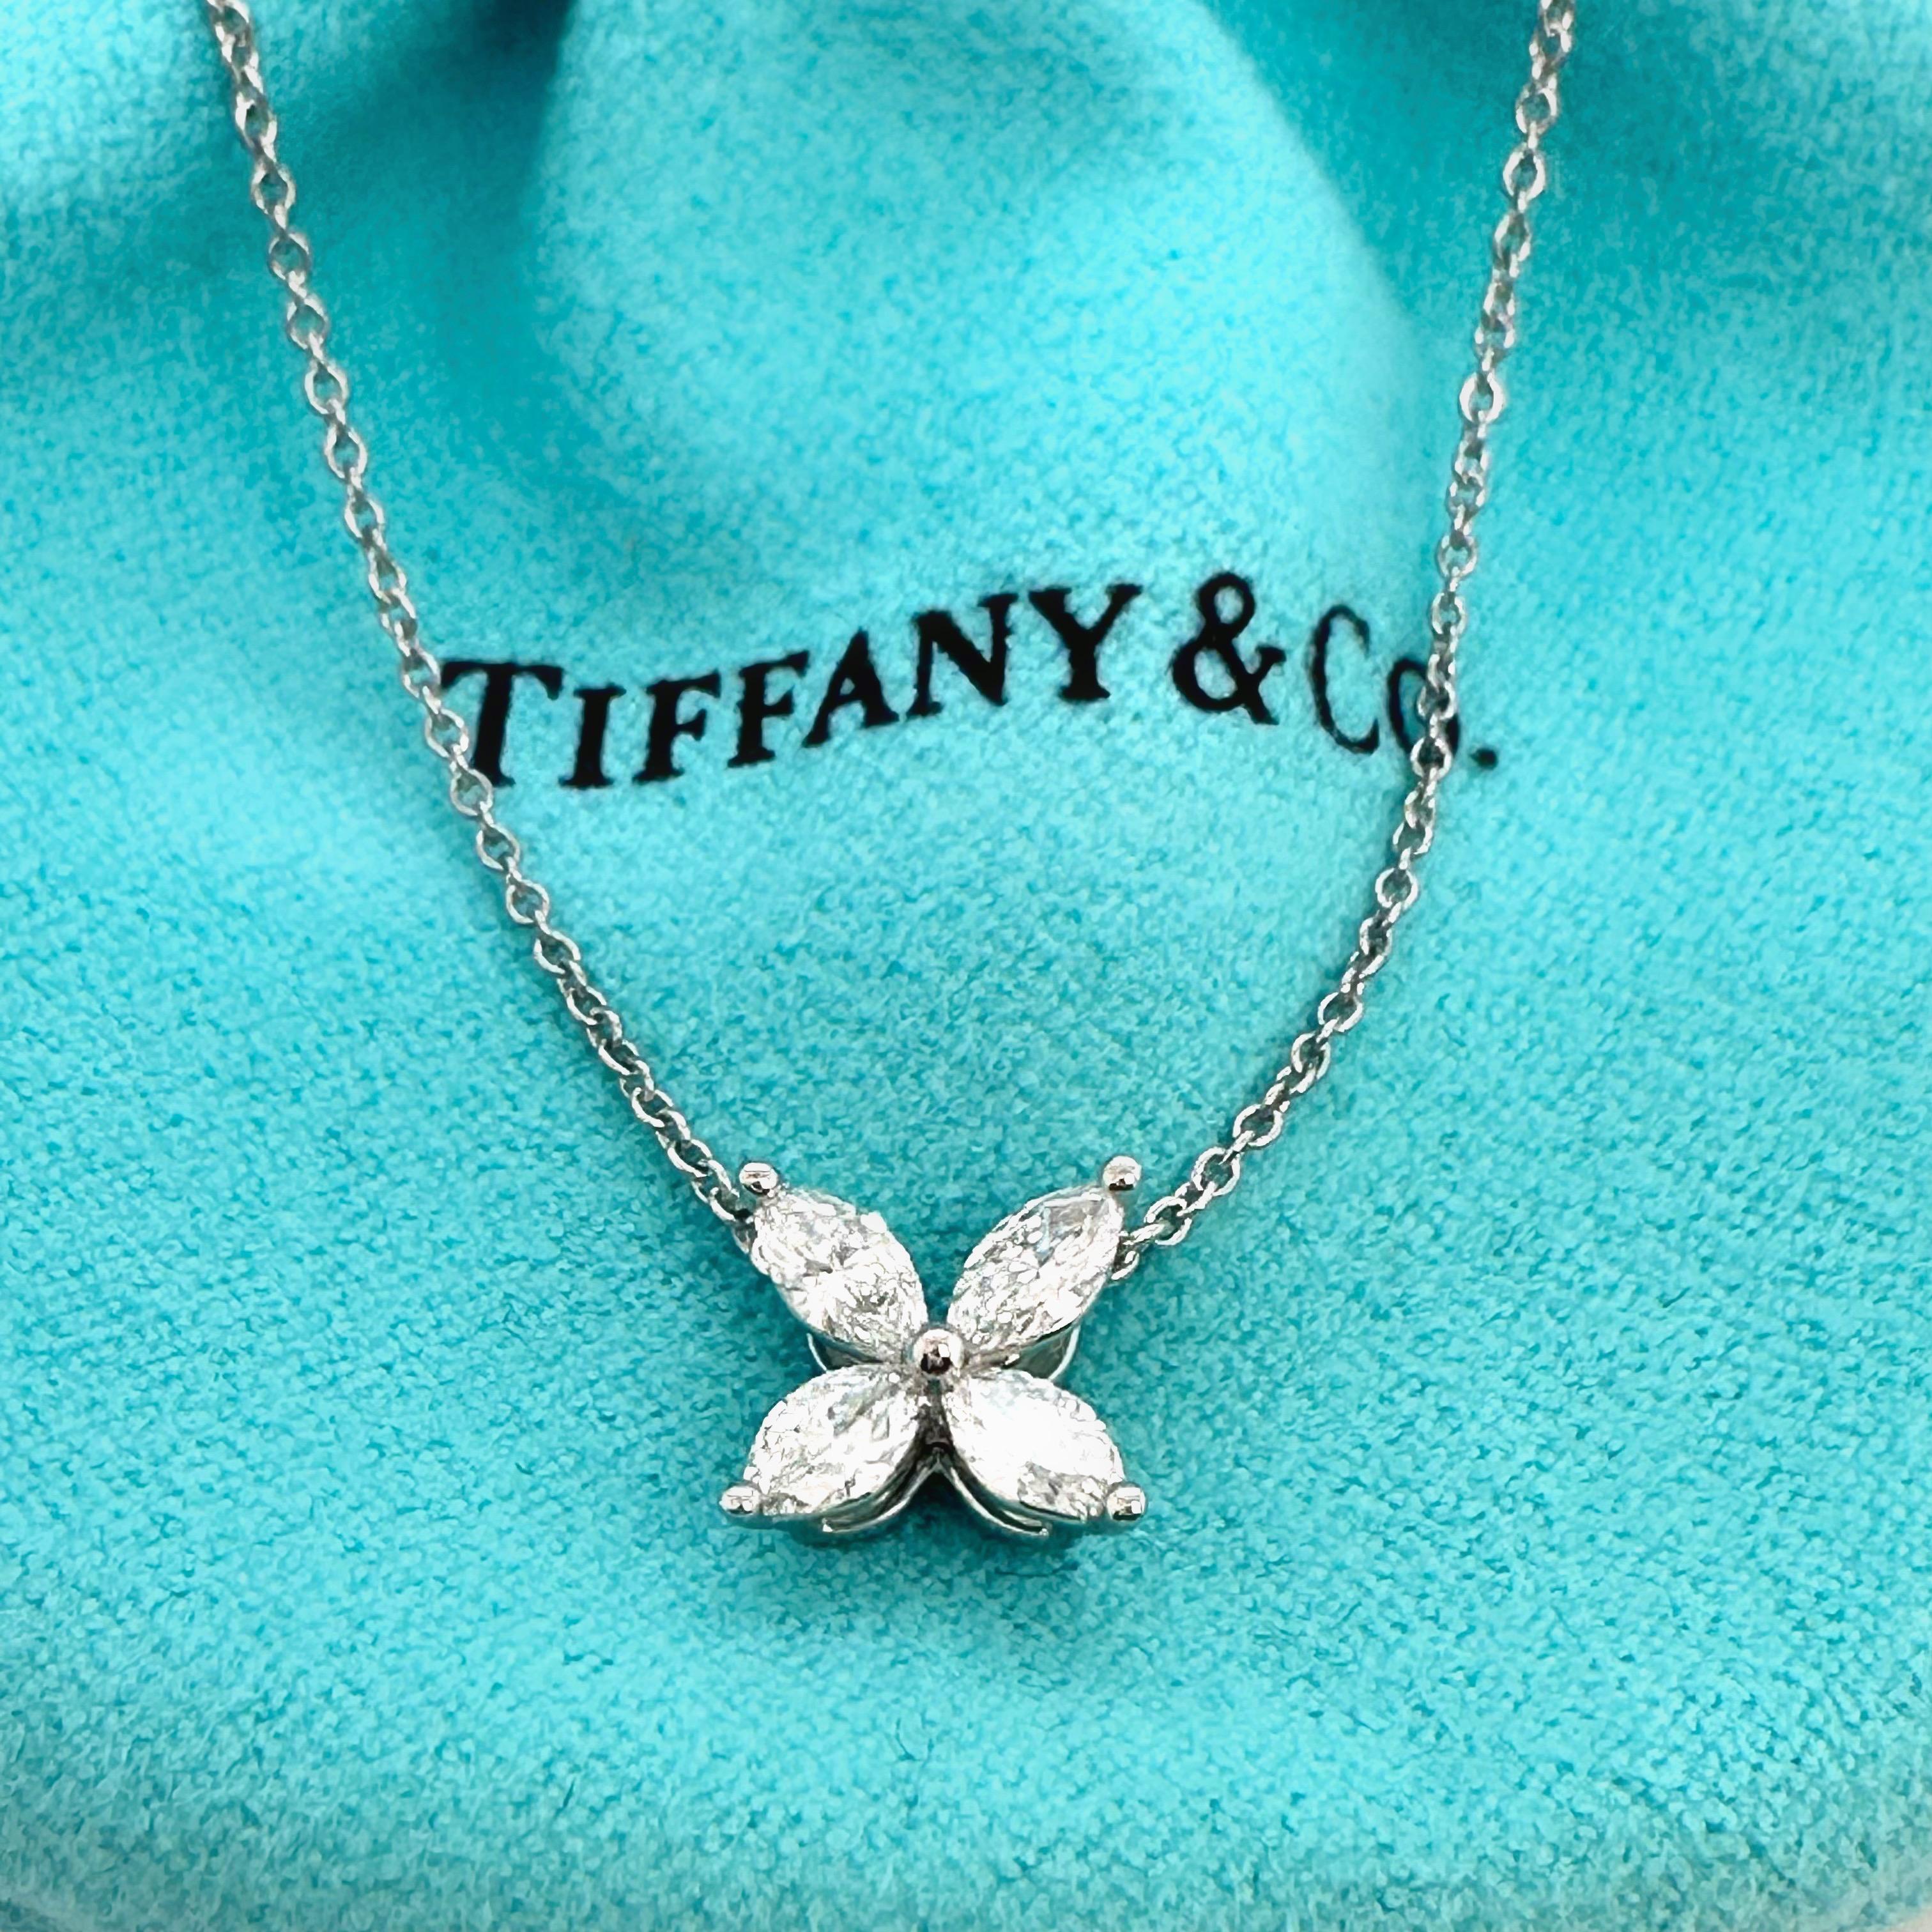 tiffany victoria necklace